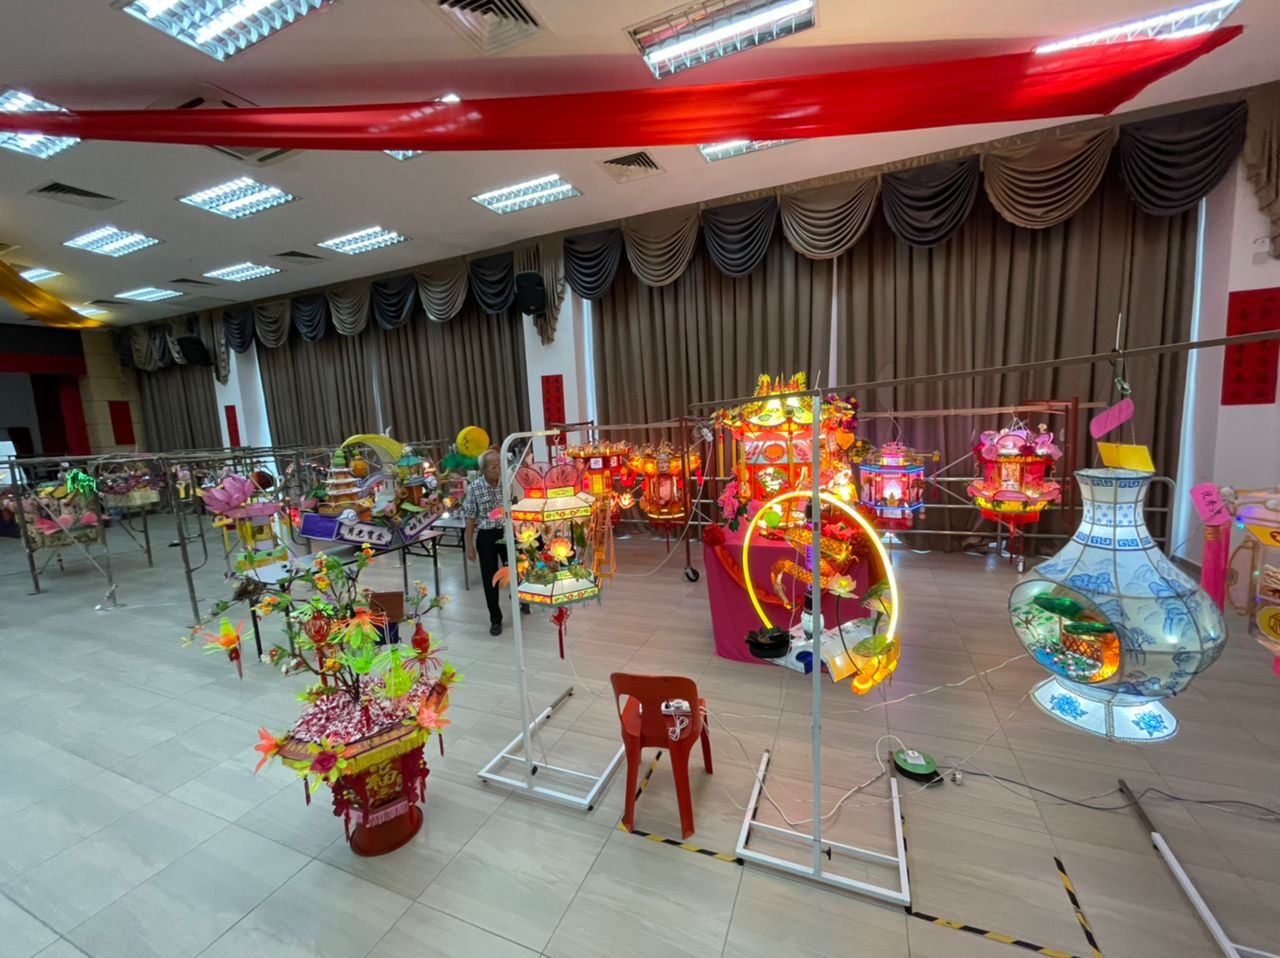 ns芙蓉：第37届全国华人文化节-全国花灯制作比赛出炉！评审：高水准